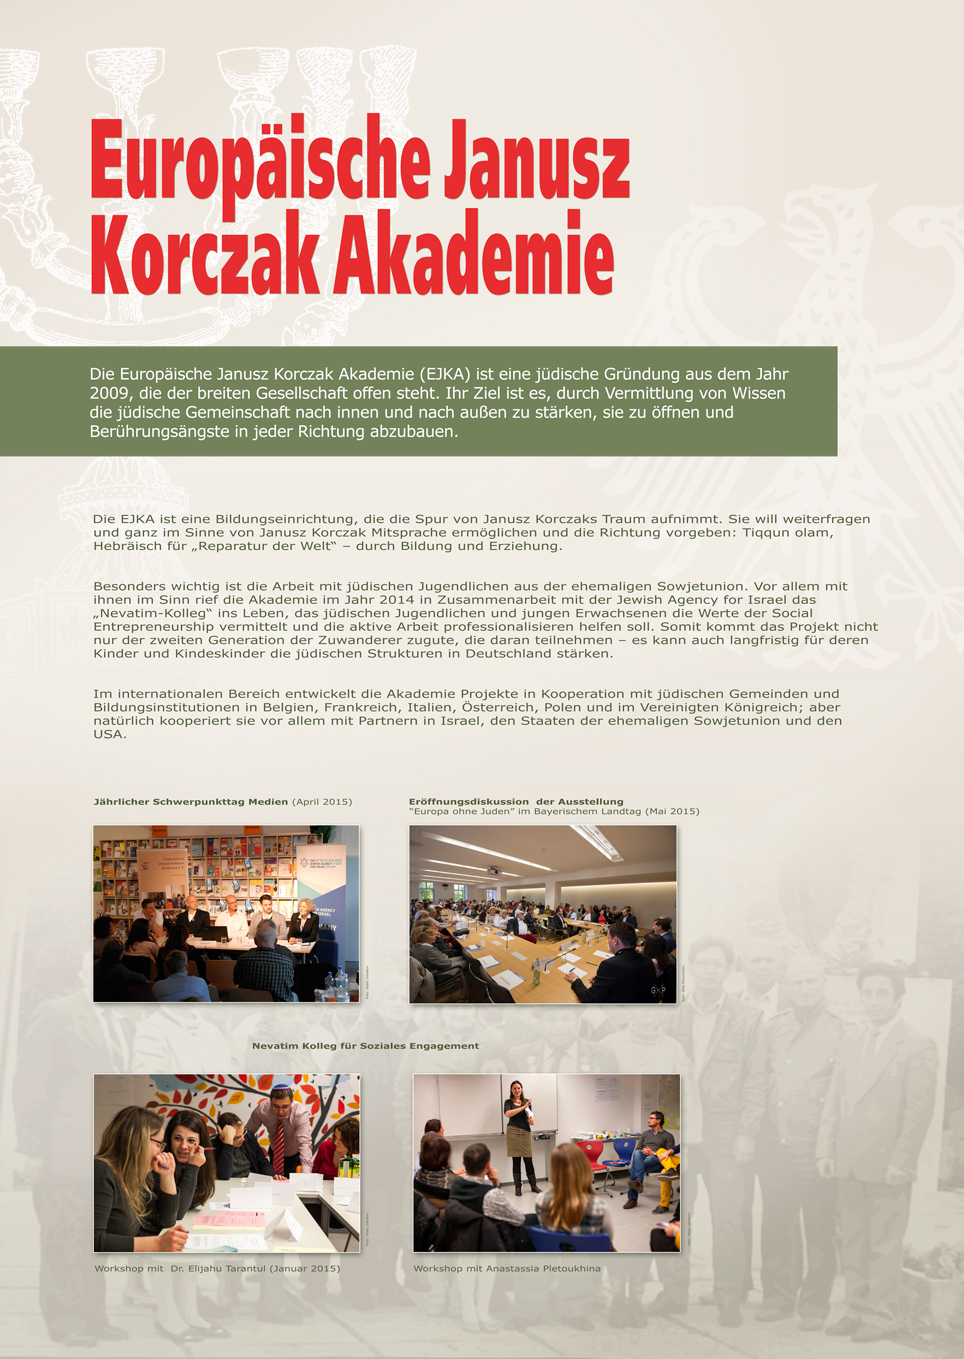 The European Janusz Korczak Academy